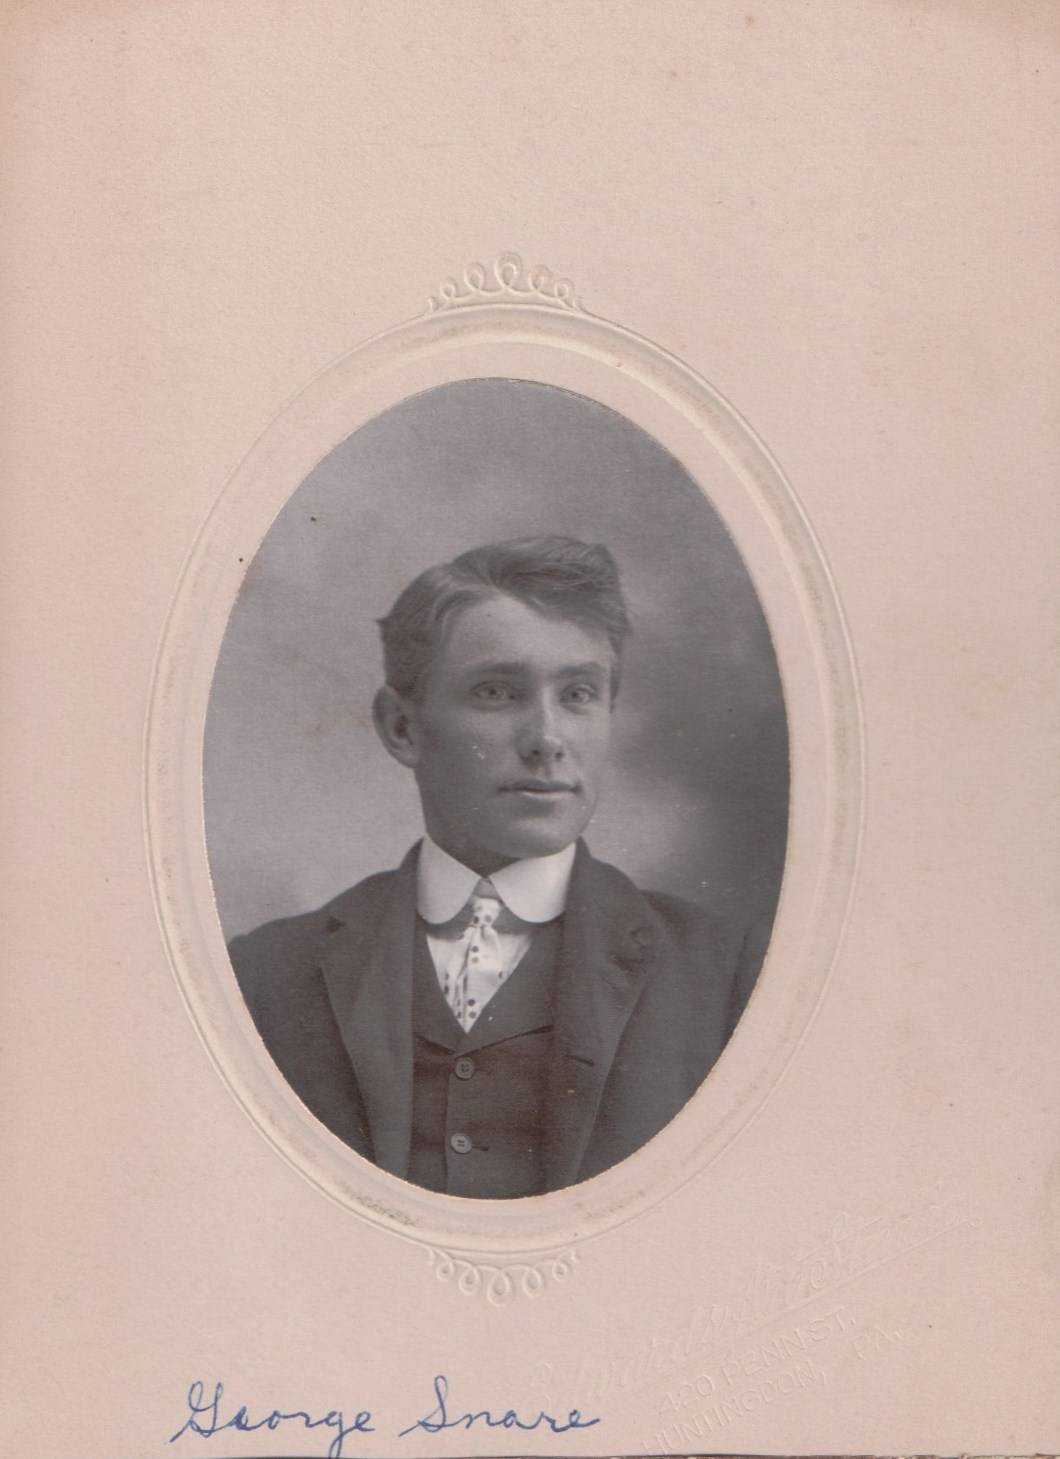 George William Snare (1885-1911)